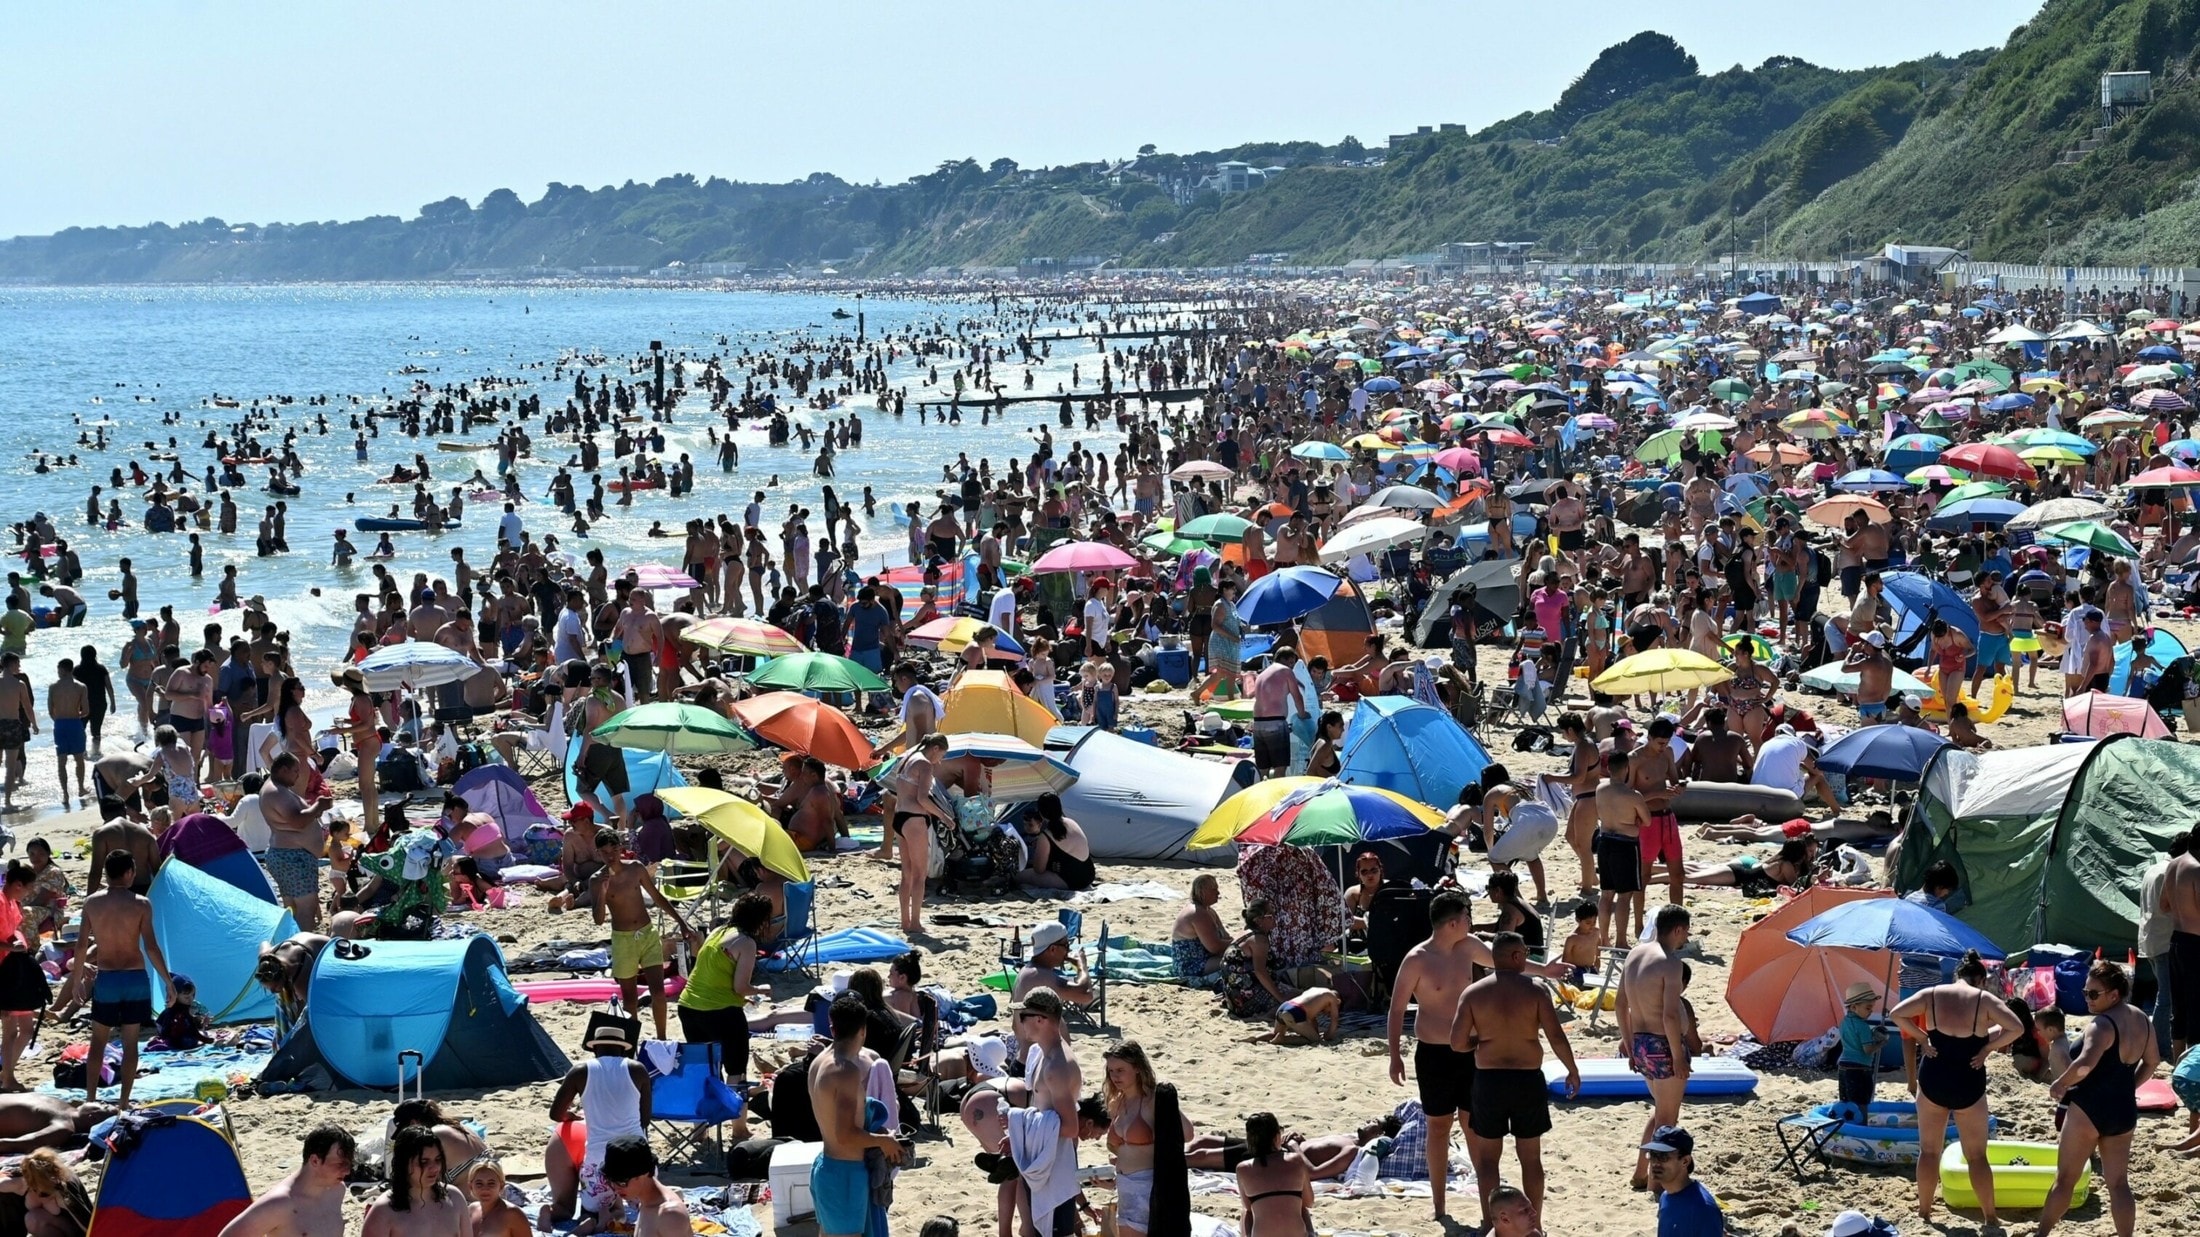 Обстановка народа. Куча людей на пляже. Переполненные пляжи. Люди на пляже Сочи. Туристы на пляже.